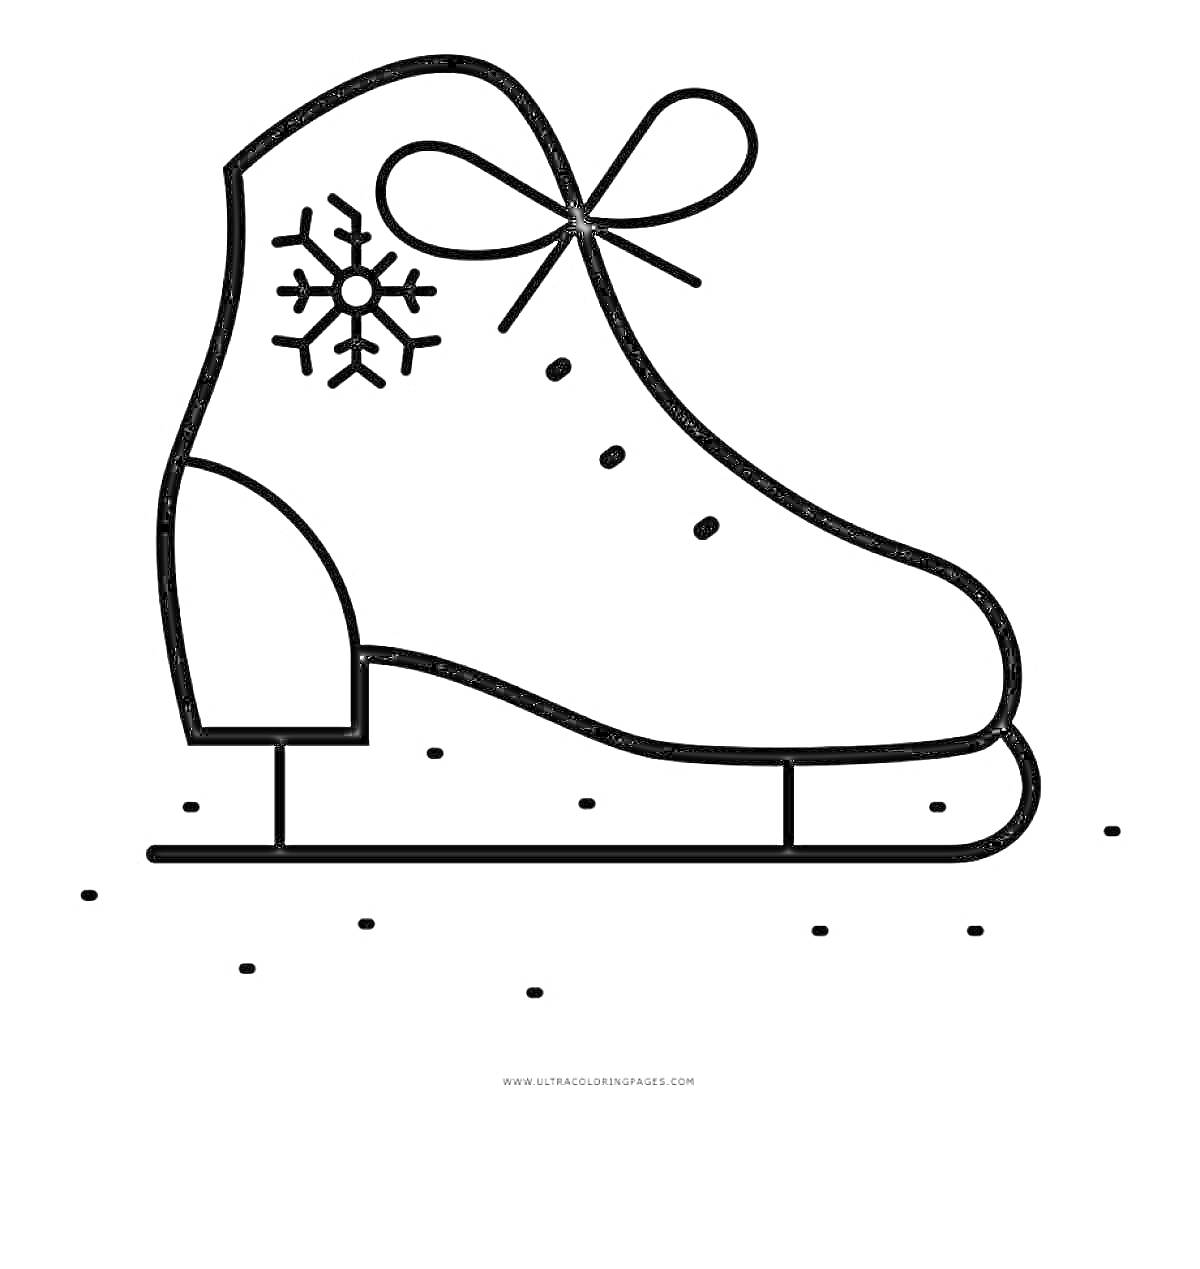 Раскраска Конек с узором в виде снежинки и шнуровкой